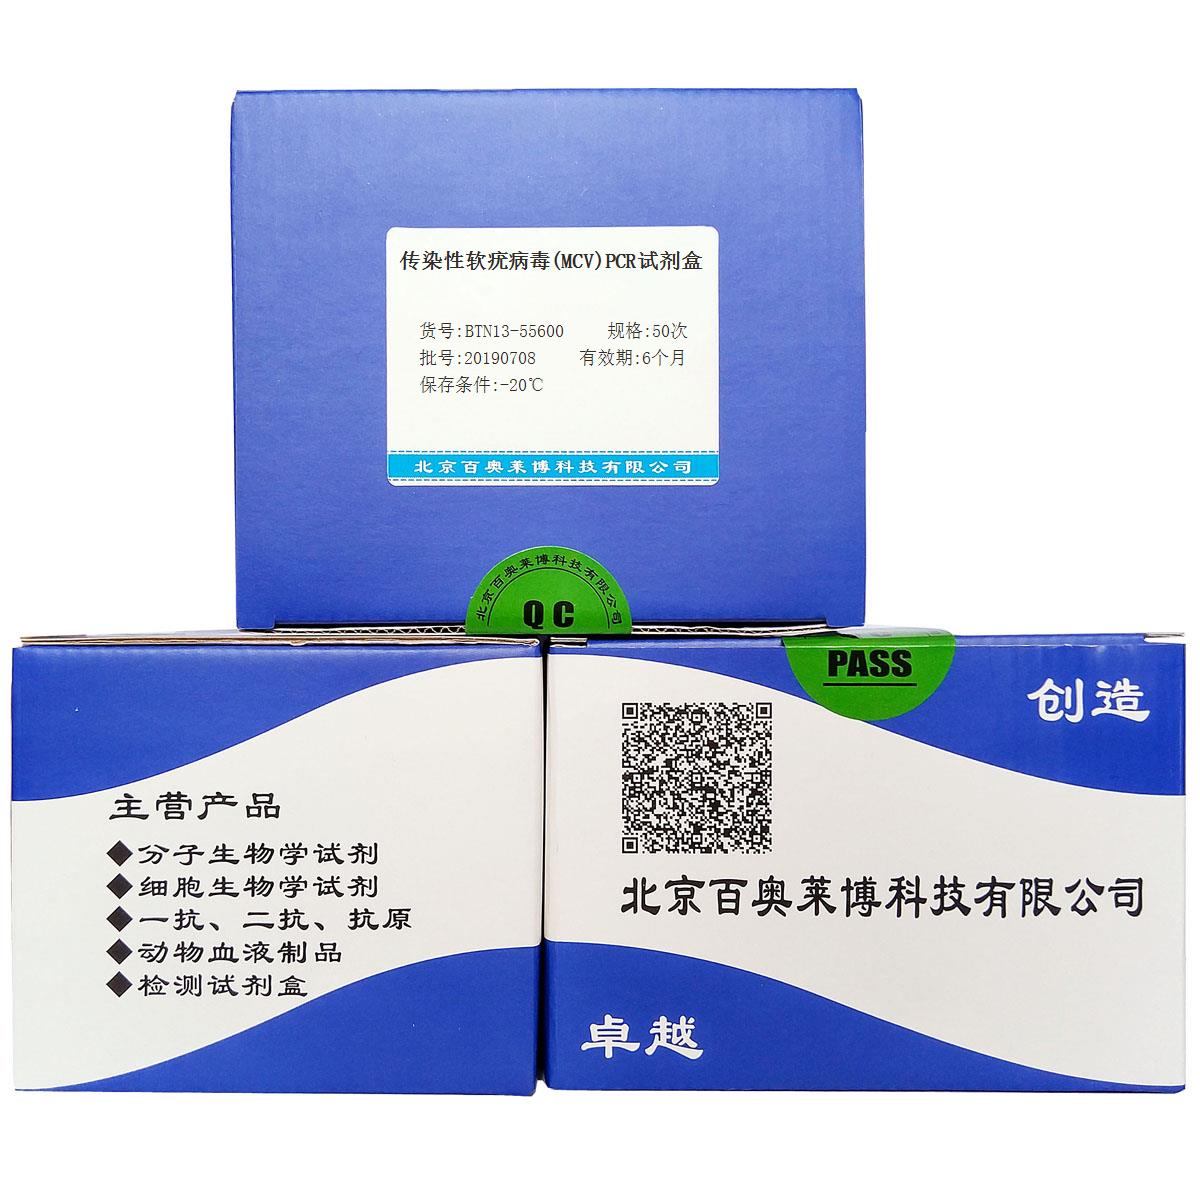 传染性软疣病毒(MCV)PCR试剂盒北京现货